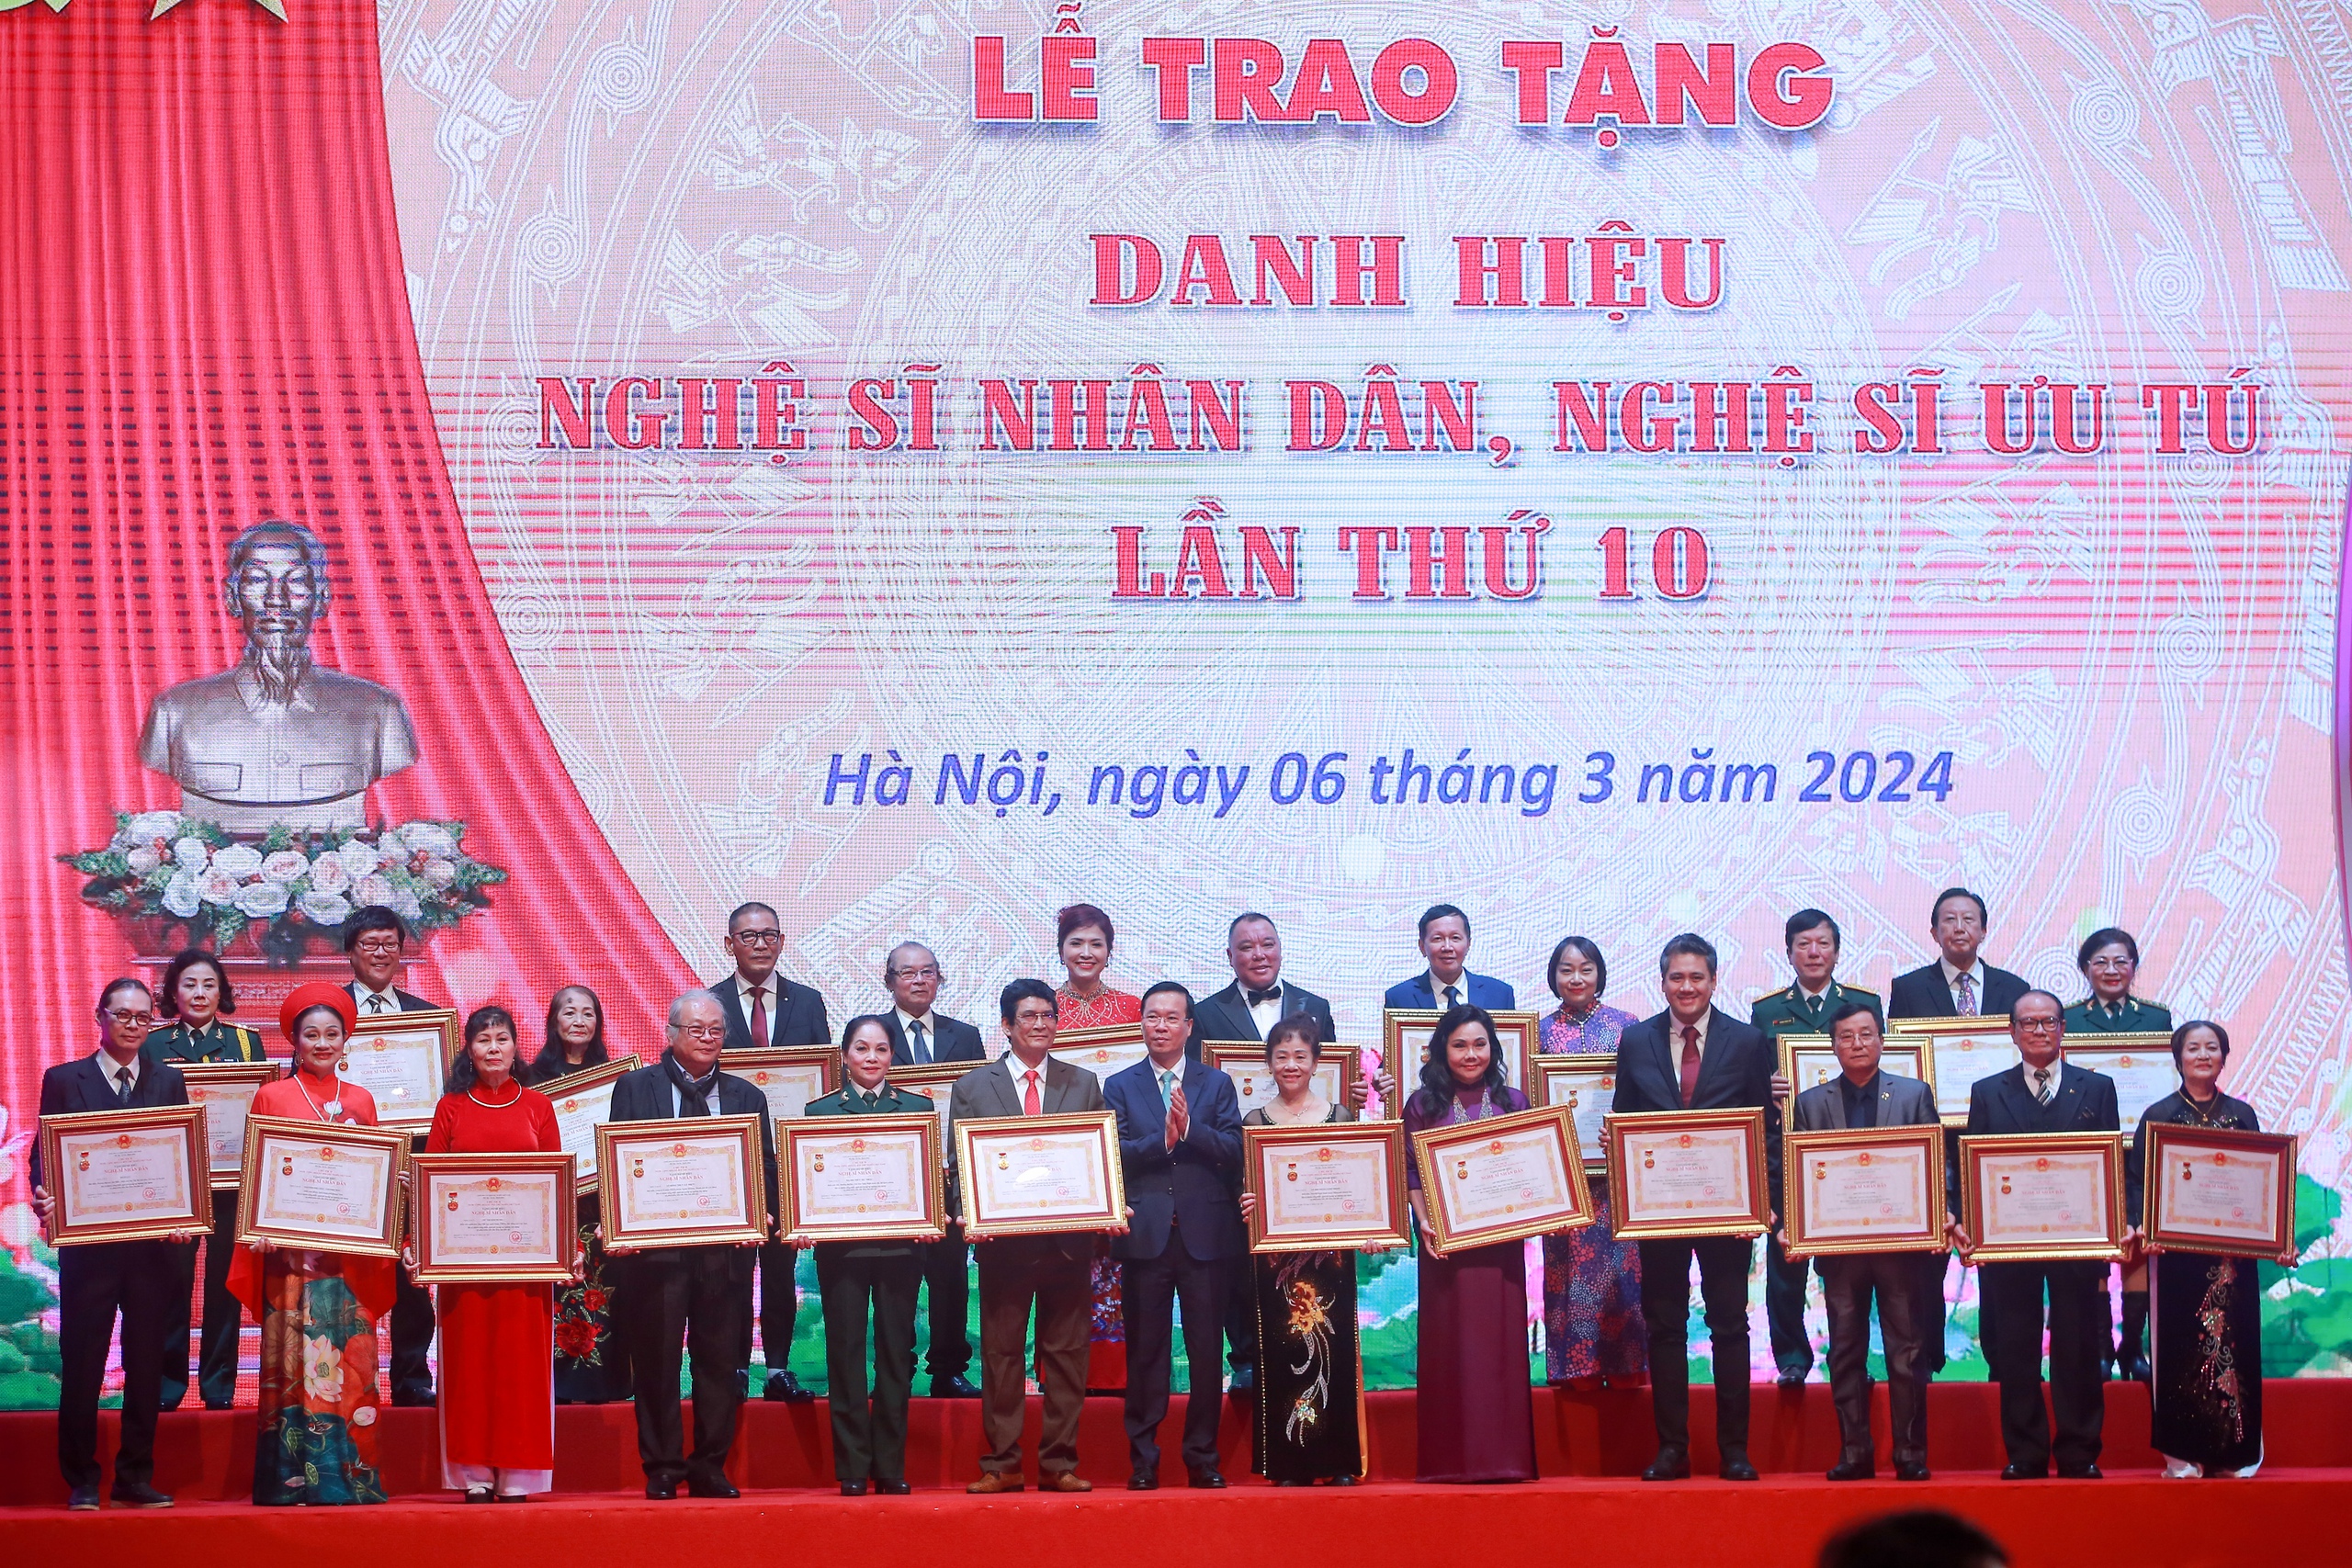 Hình ảnh Chủ tịch nước Võ Văn Thưởng dự Lễ trao tặng danh hiệu NSND, NSƯT lần thứ 10- Ảnh 5.